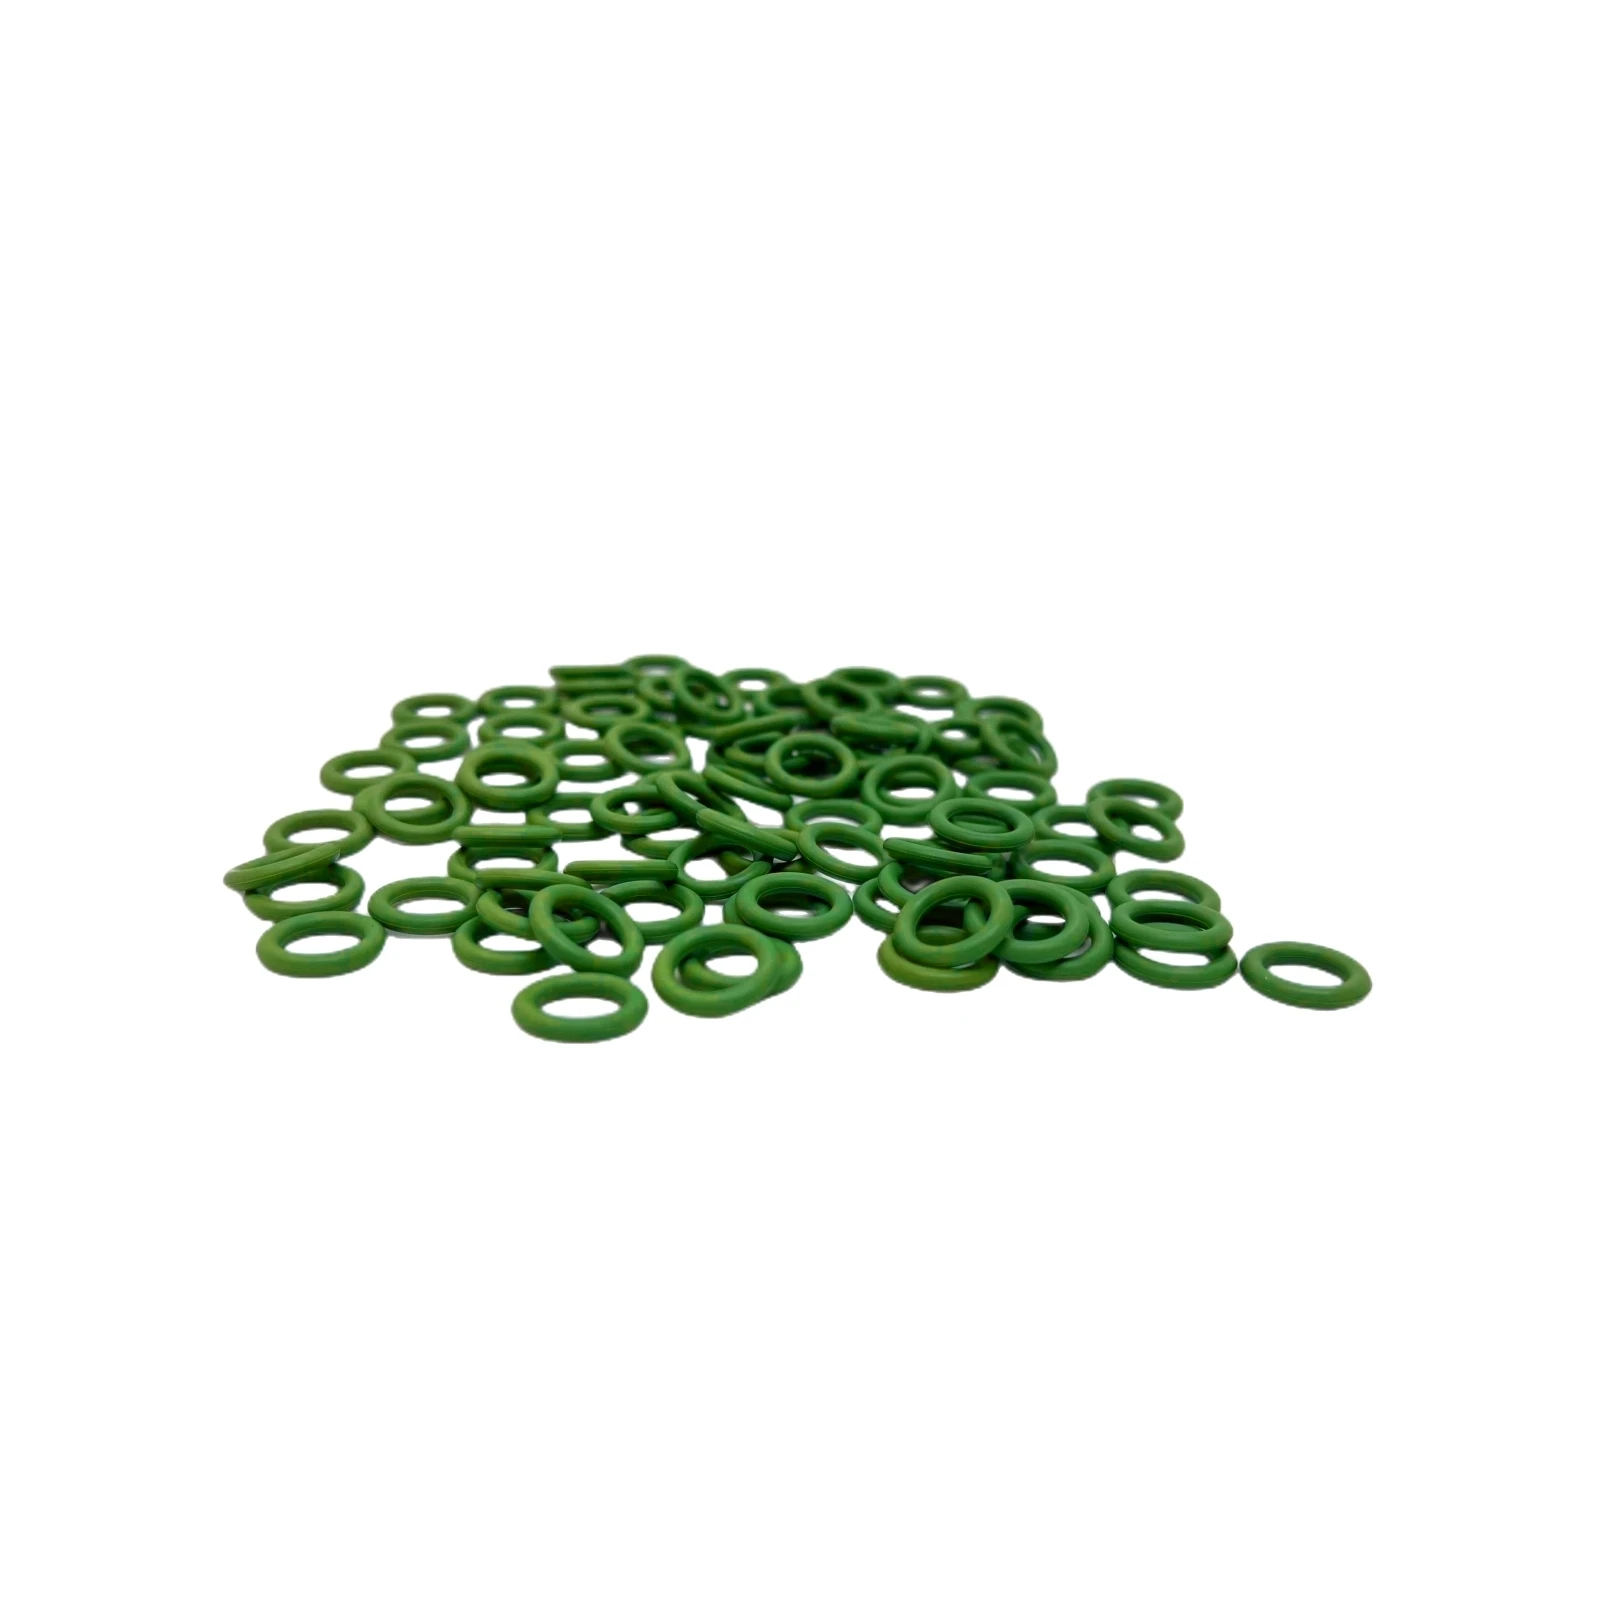 Уплотнительное кольцо для автомобильного мешка кондиционера RV65F (6.8 * 1.9) # 10 R134a Уплотнительное кольцо из NBR зеленого цвета уплотнительное резиновое кольцо компрессора Изображение 0